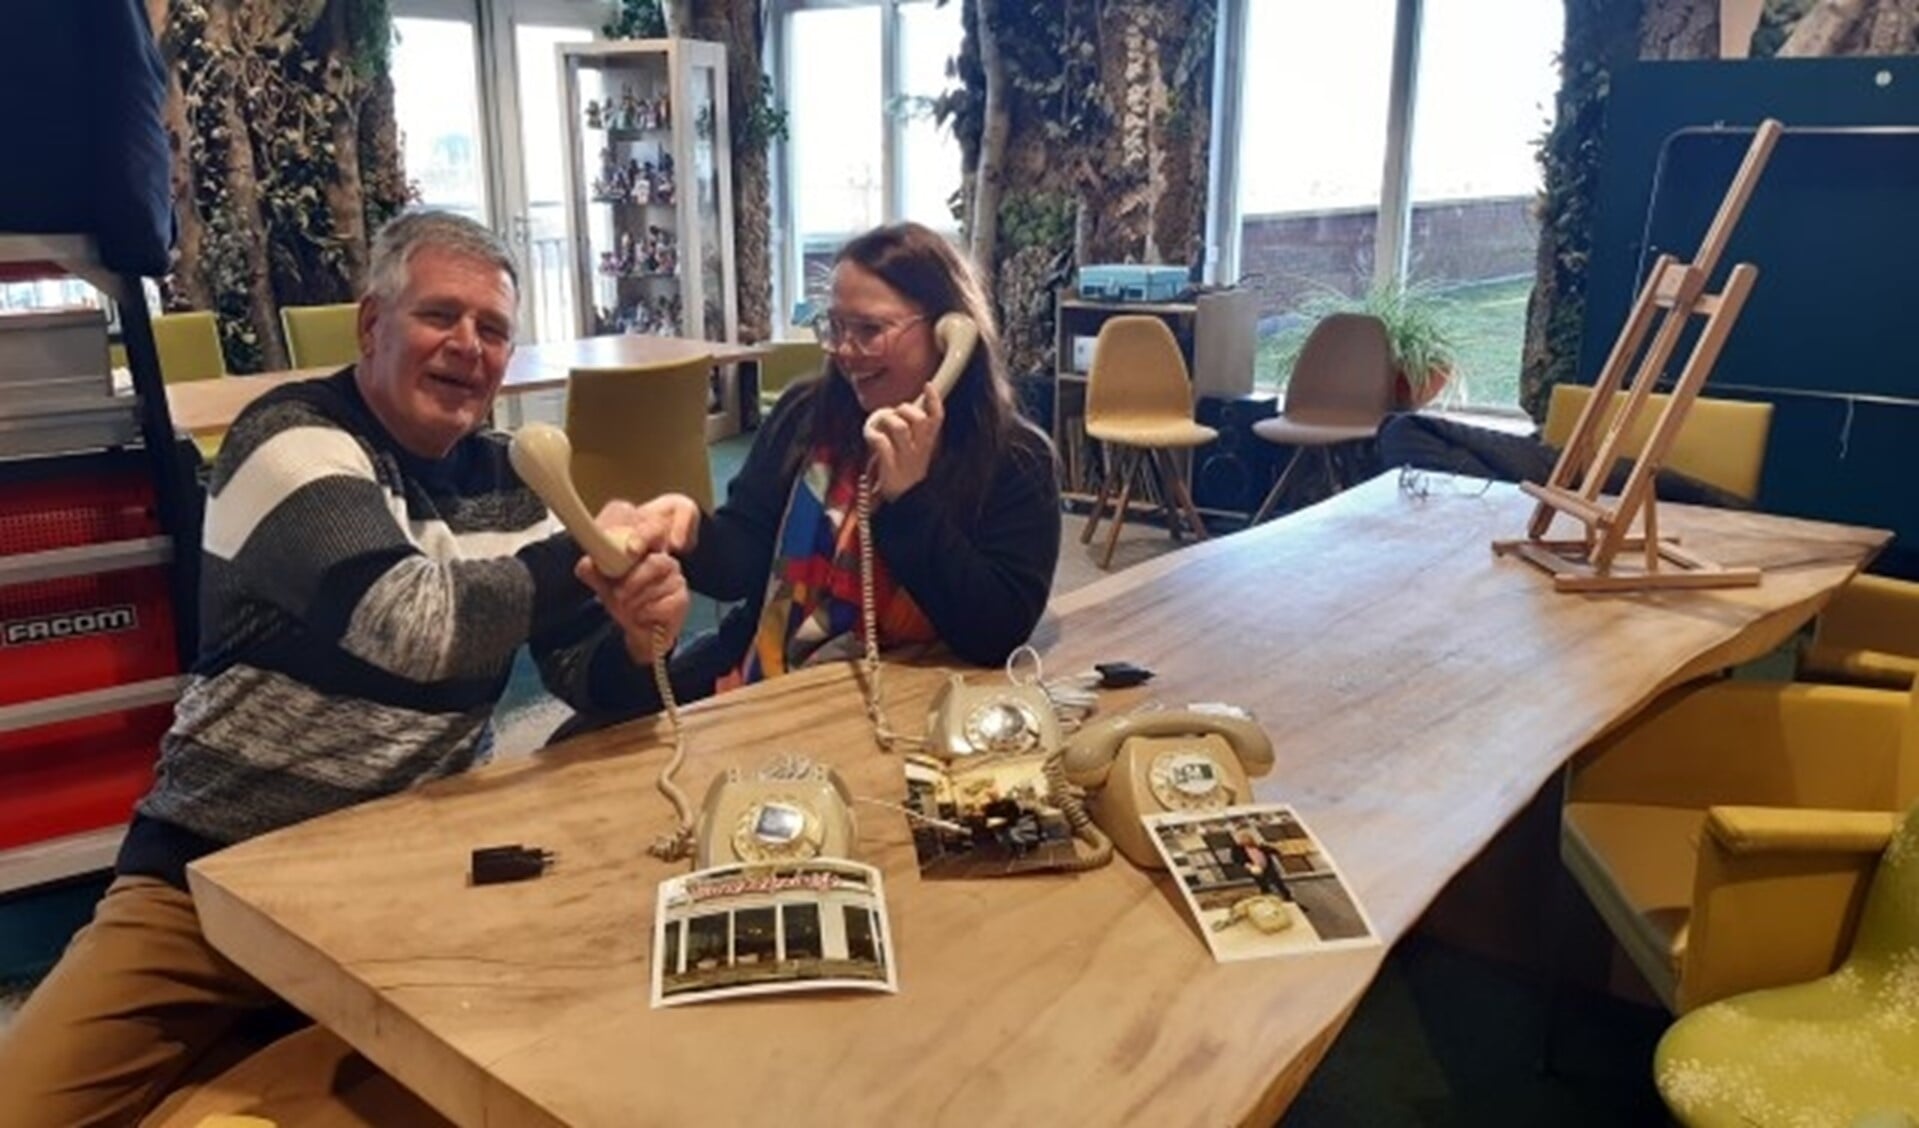 Joop van der Vet brengt Wonderfoons bij Zoetermeerse centra voor ouderenzorg. Rechts: Melanie Bosman, coördinator welzijn dagactiviteiten WZH Oosterheem. Foto: Ineke van der Vet.